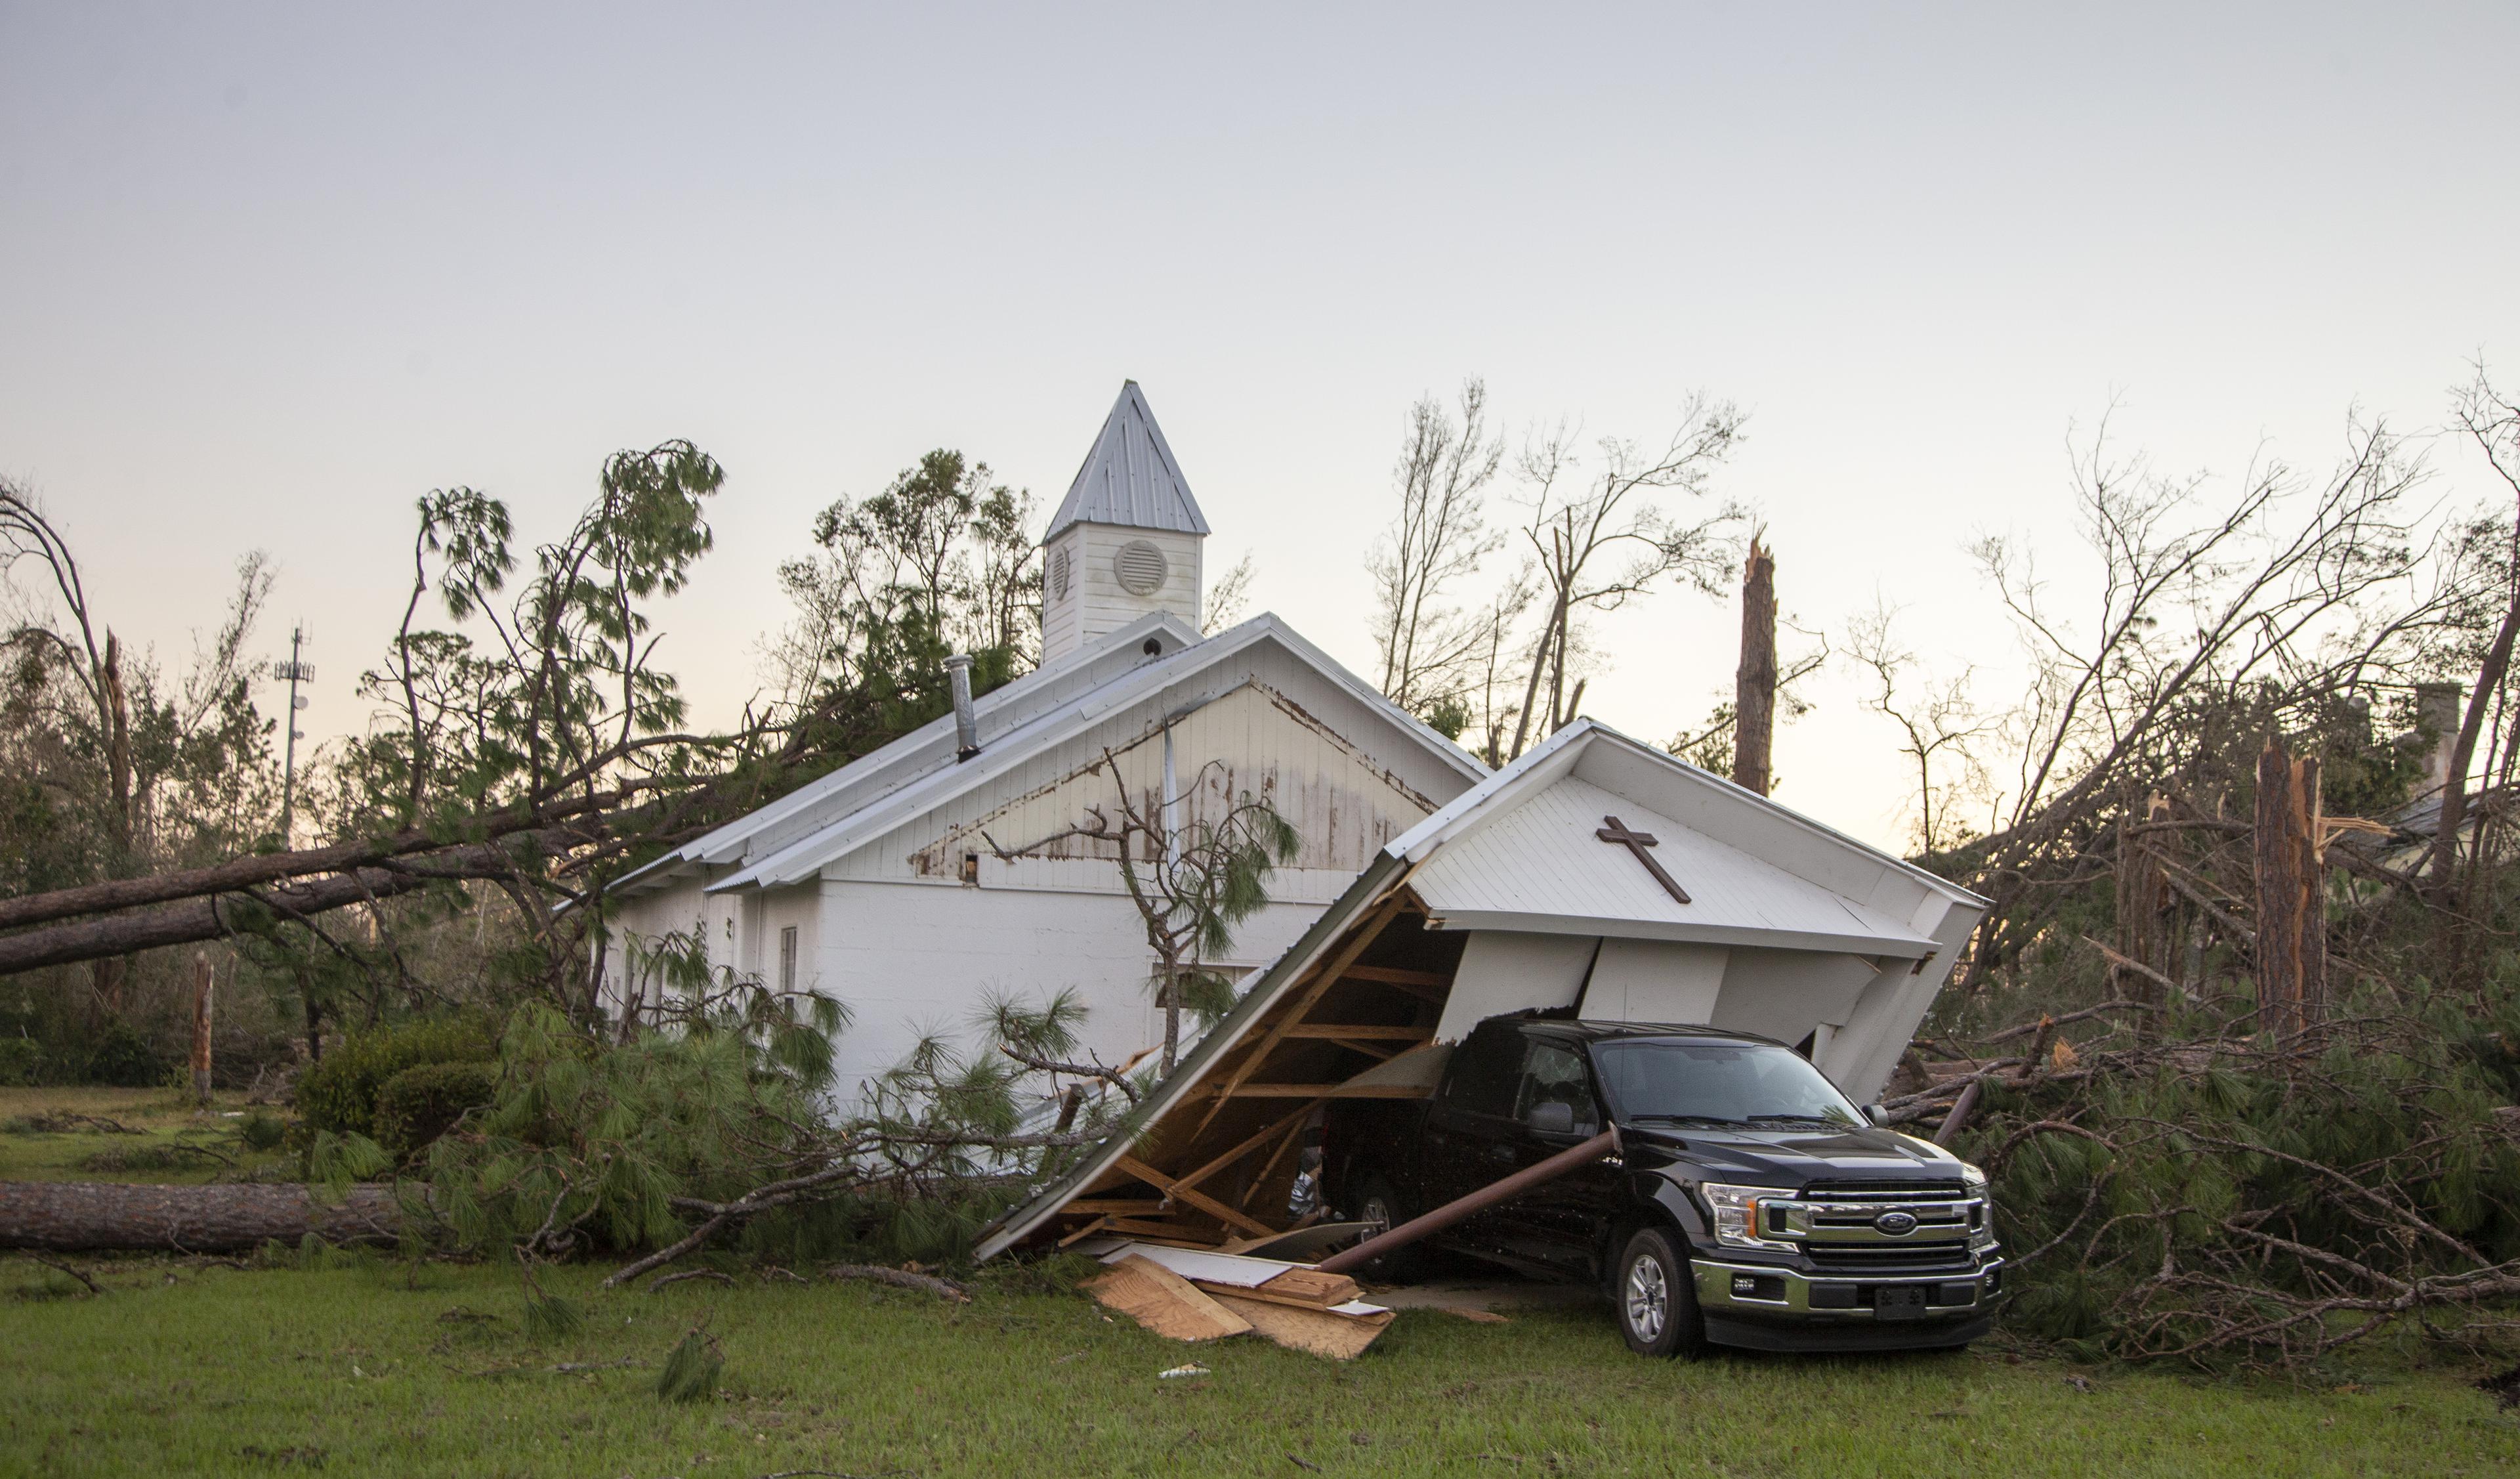 Potraga poslije katastrofalnog uragana: Florida i dalje u mraku, 1.700 ljudi pretražuje 25 hiljada razorenih domova